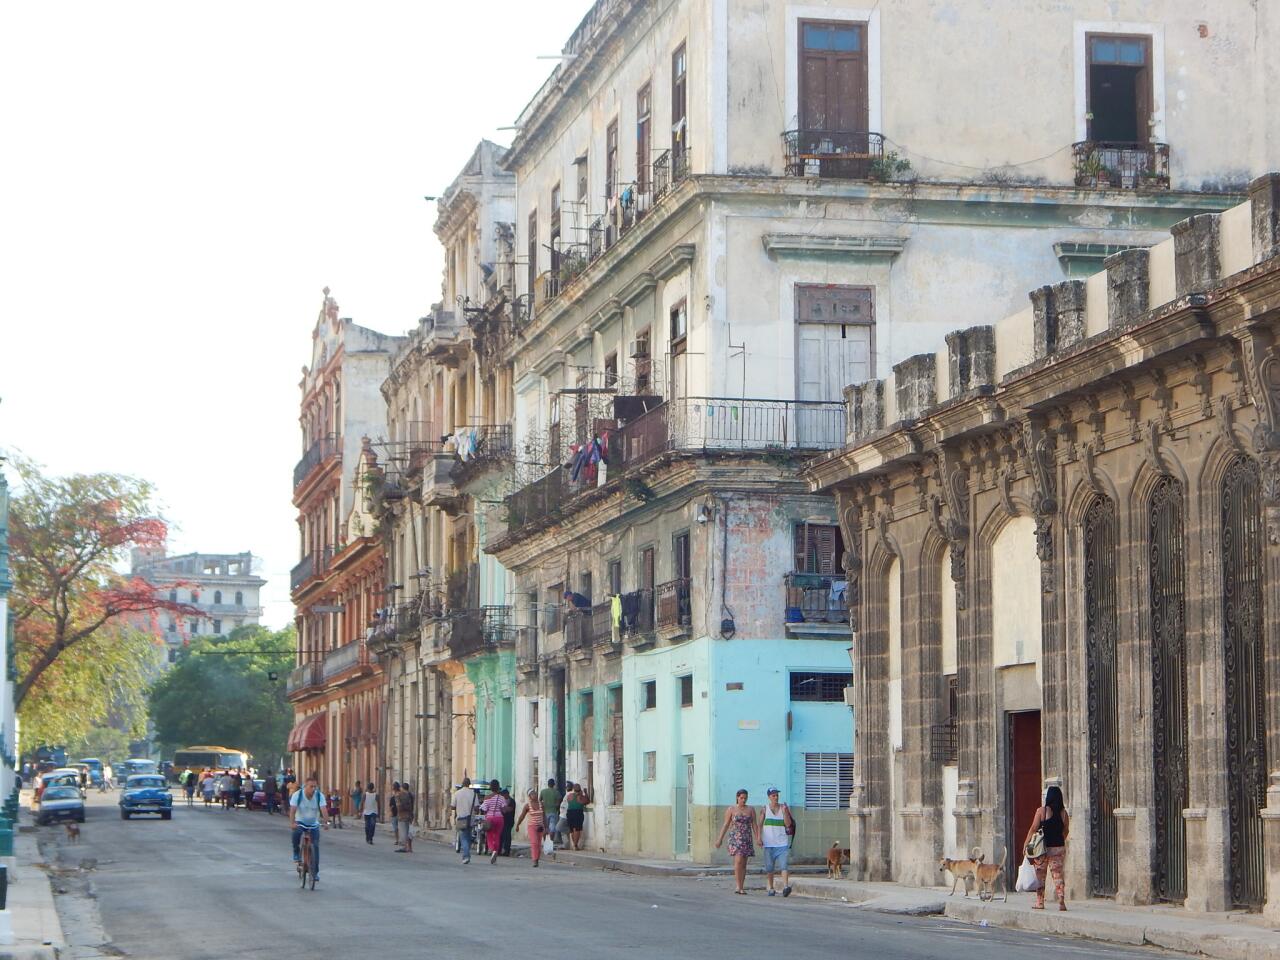 Visiting Cuba